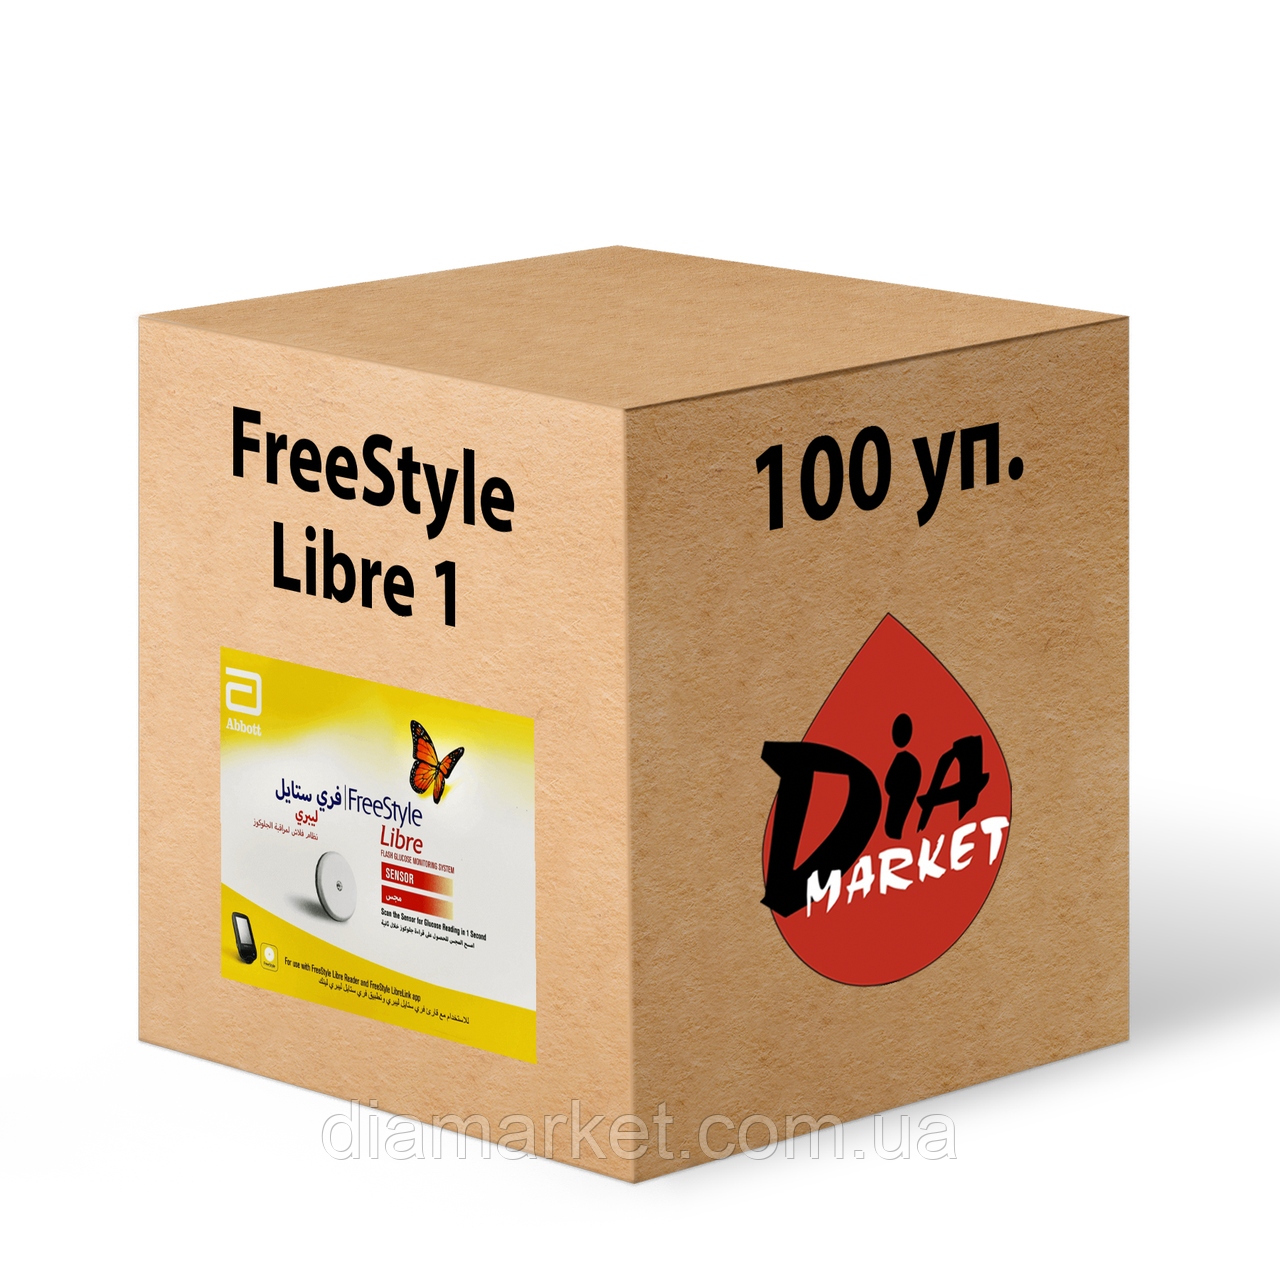 Сенсор FreeStyle Libre 1 (Фристайл Лібре 1) 100 шт.